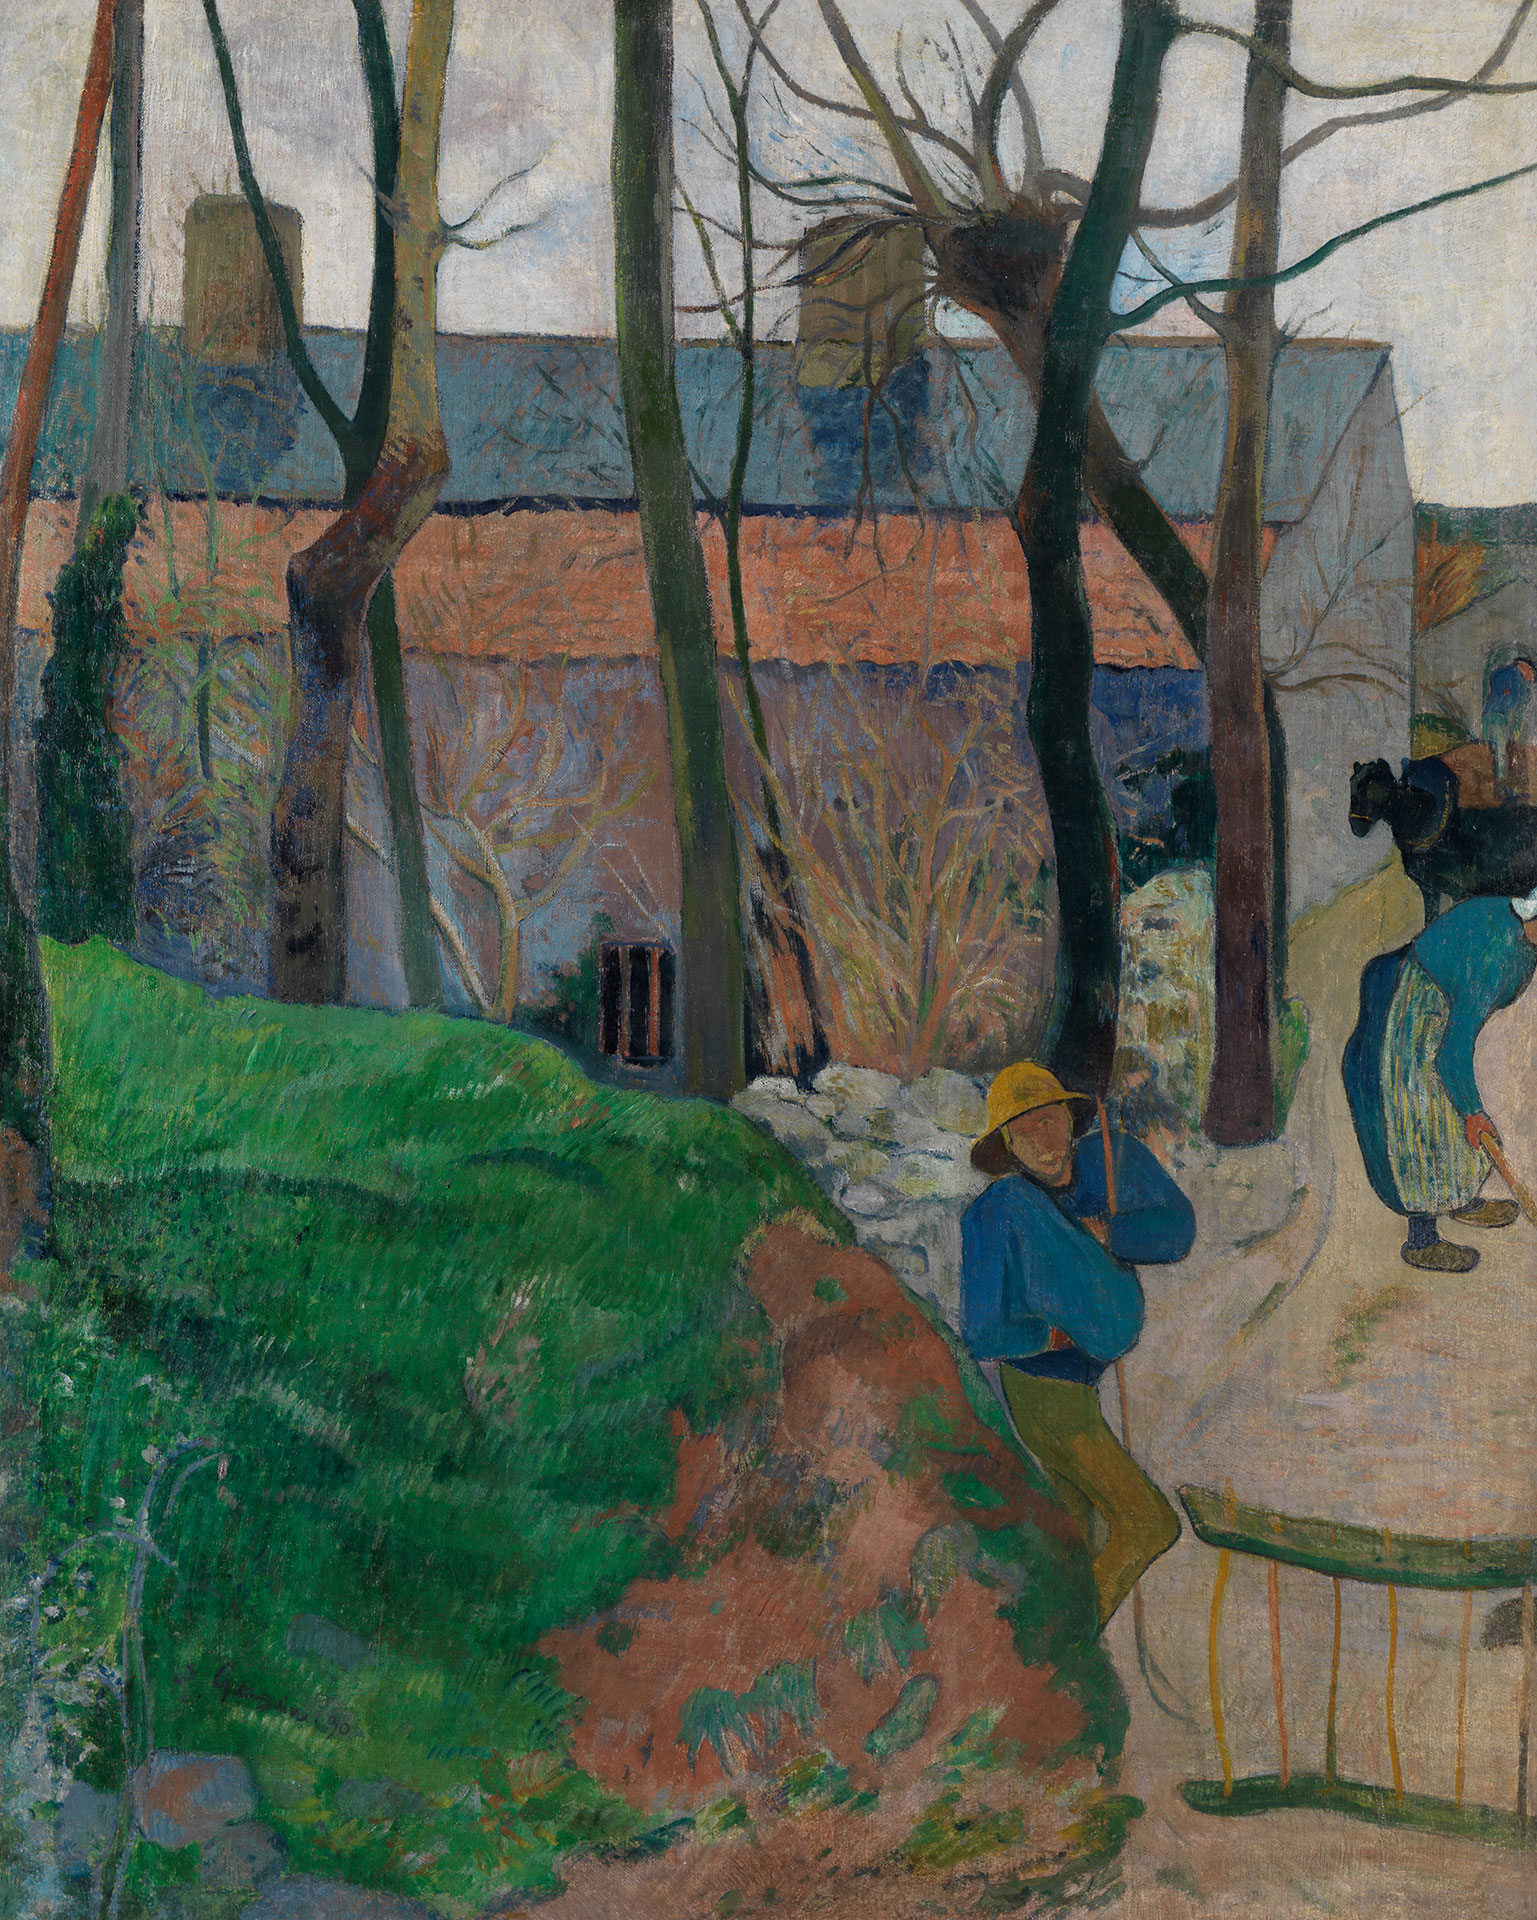 Abbildung eines Gemäldes von Paul Gauguin, auf dem Häuser, Bäume und Menschen in einem französischen Dorf zu sehen sind.